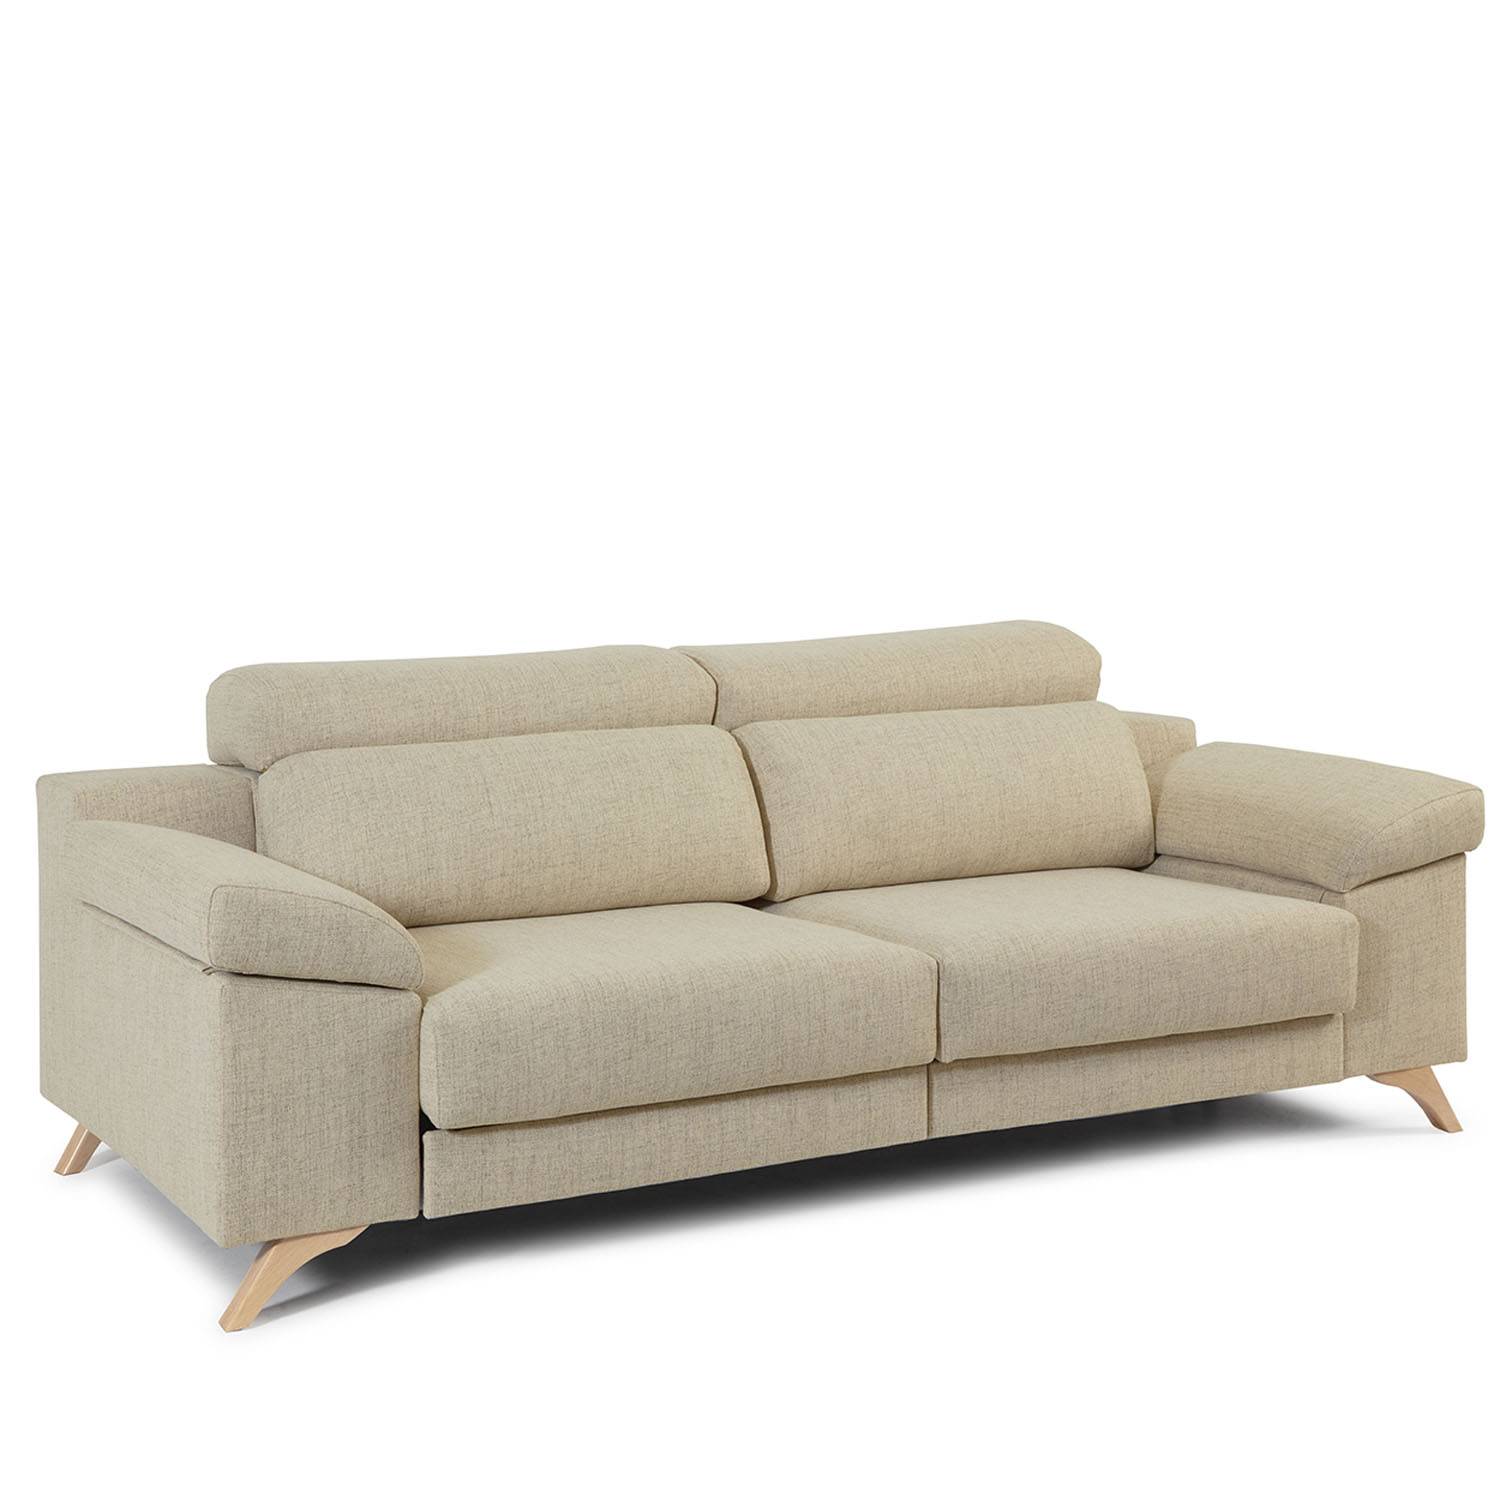 comprar sofá 3 plazas barato tapizado - Muebles San Francisco